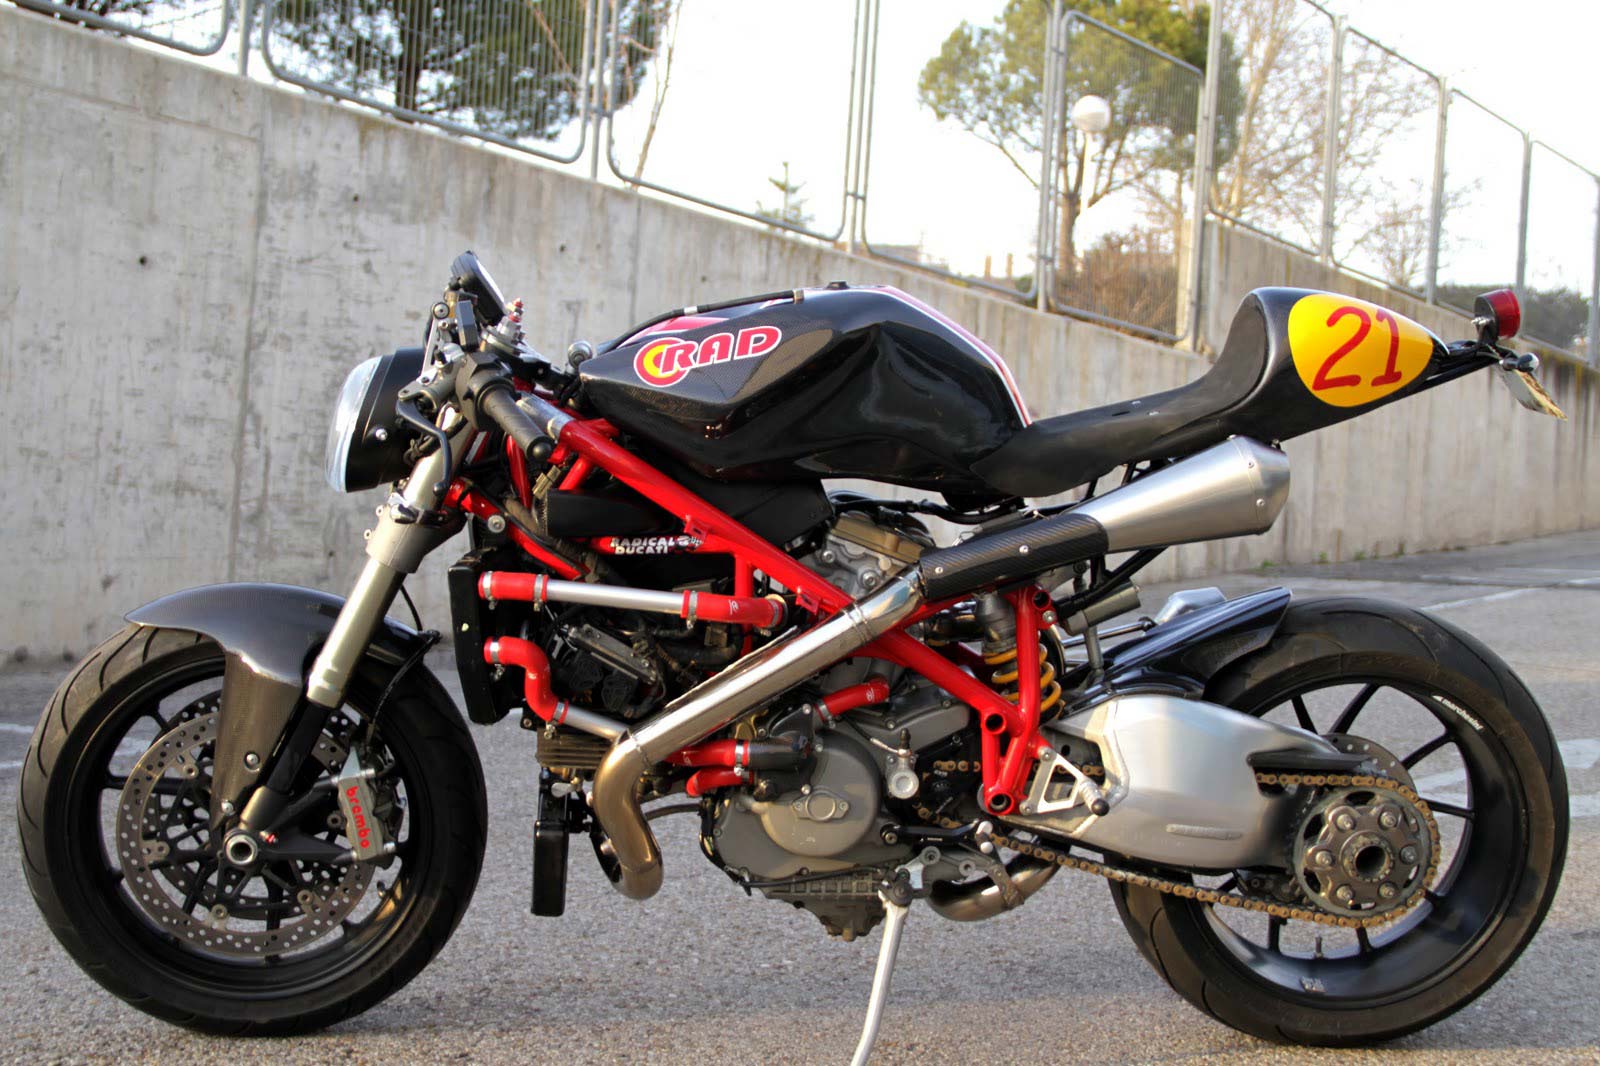 Parade Modifikasi Cafe Racer Ducati Desain Modifikasi Motor